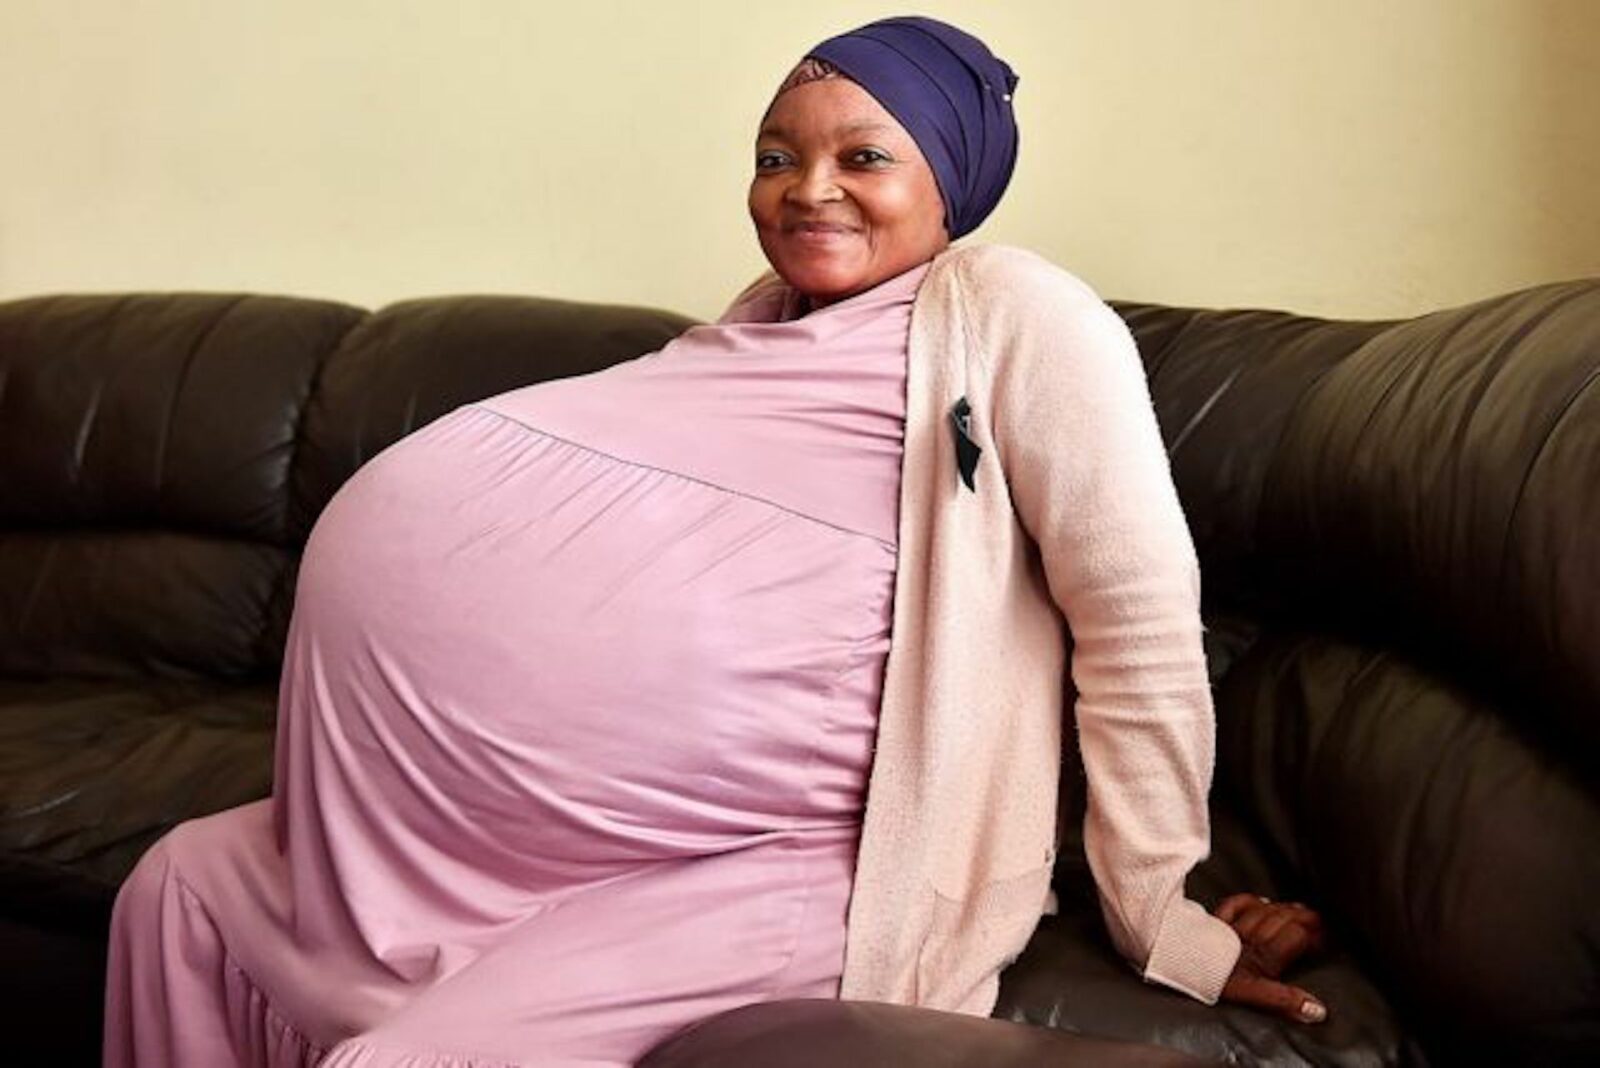 Une sud-africaine donne naissance à dix bébés, une première mondiale